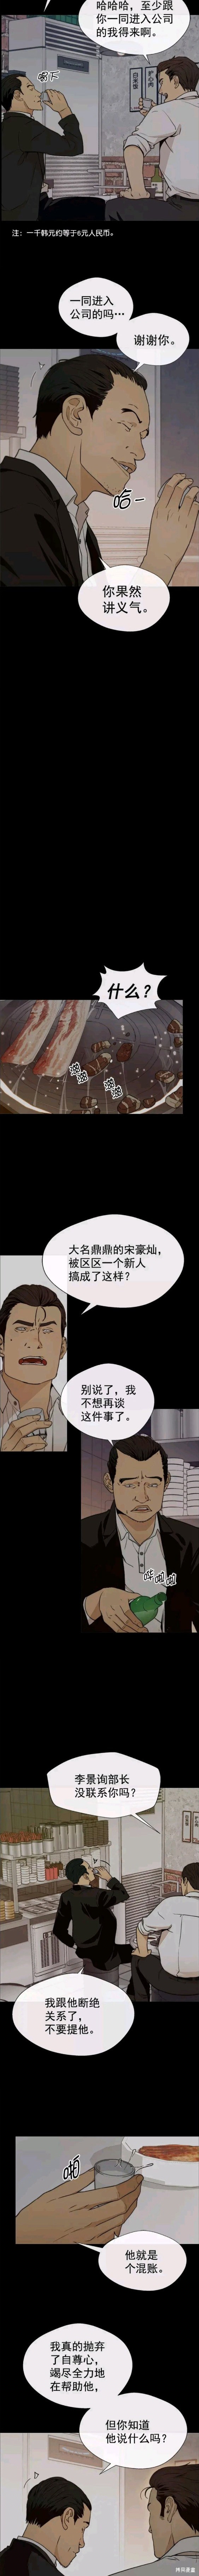 男子汉漫画,第99话2图